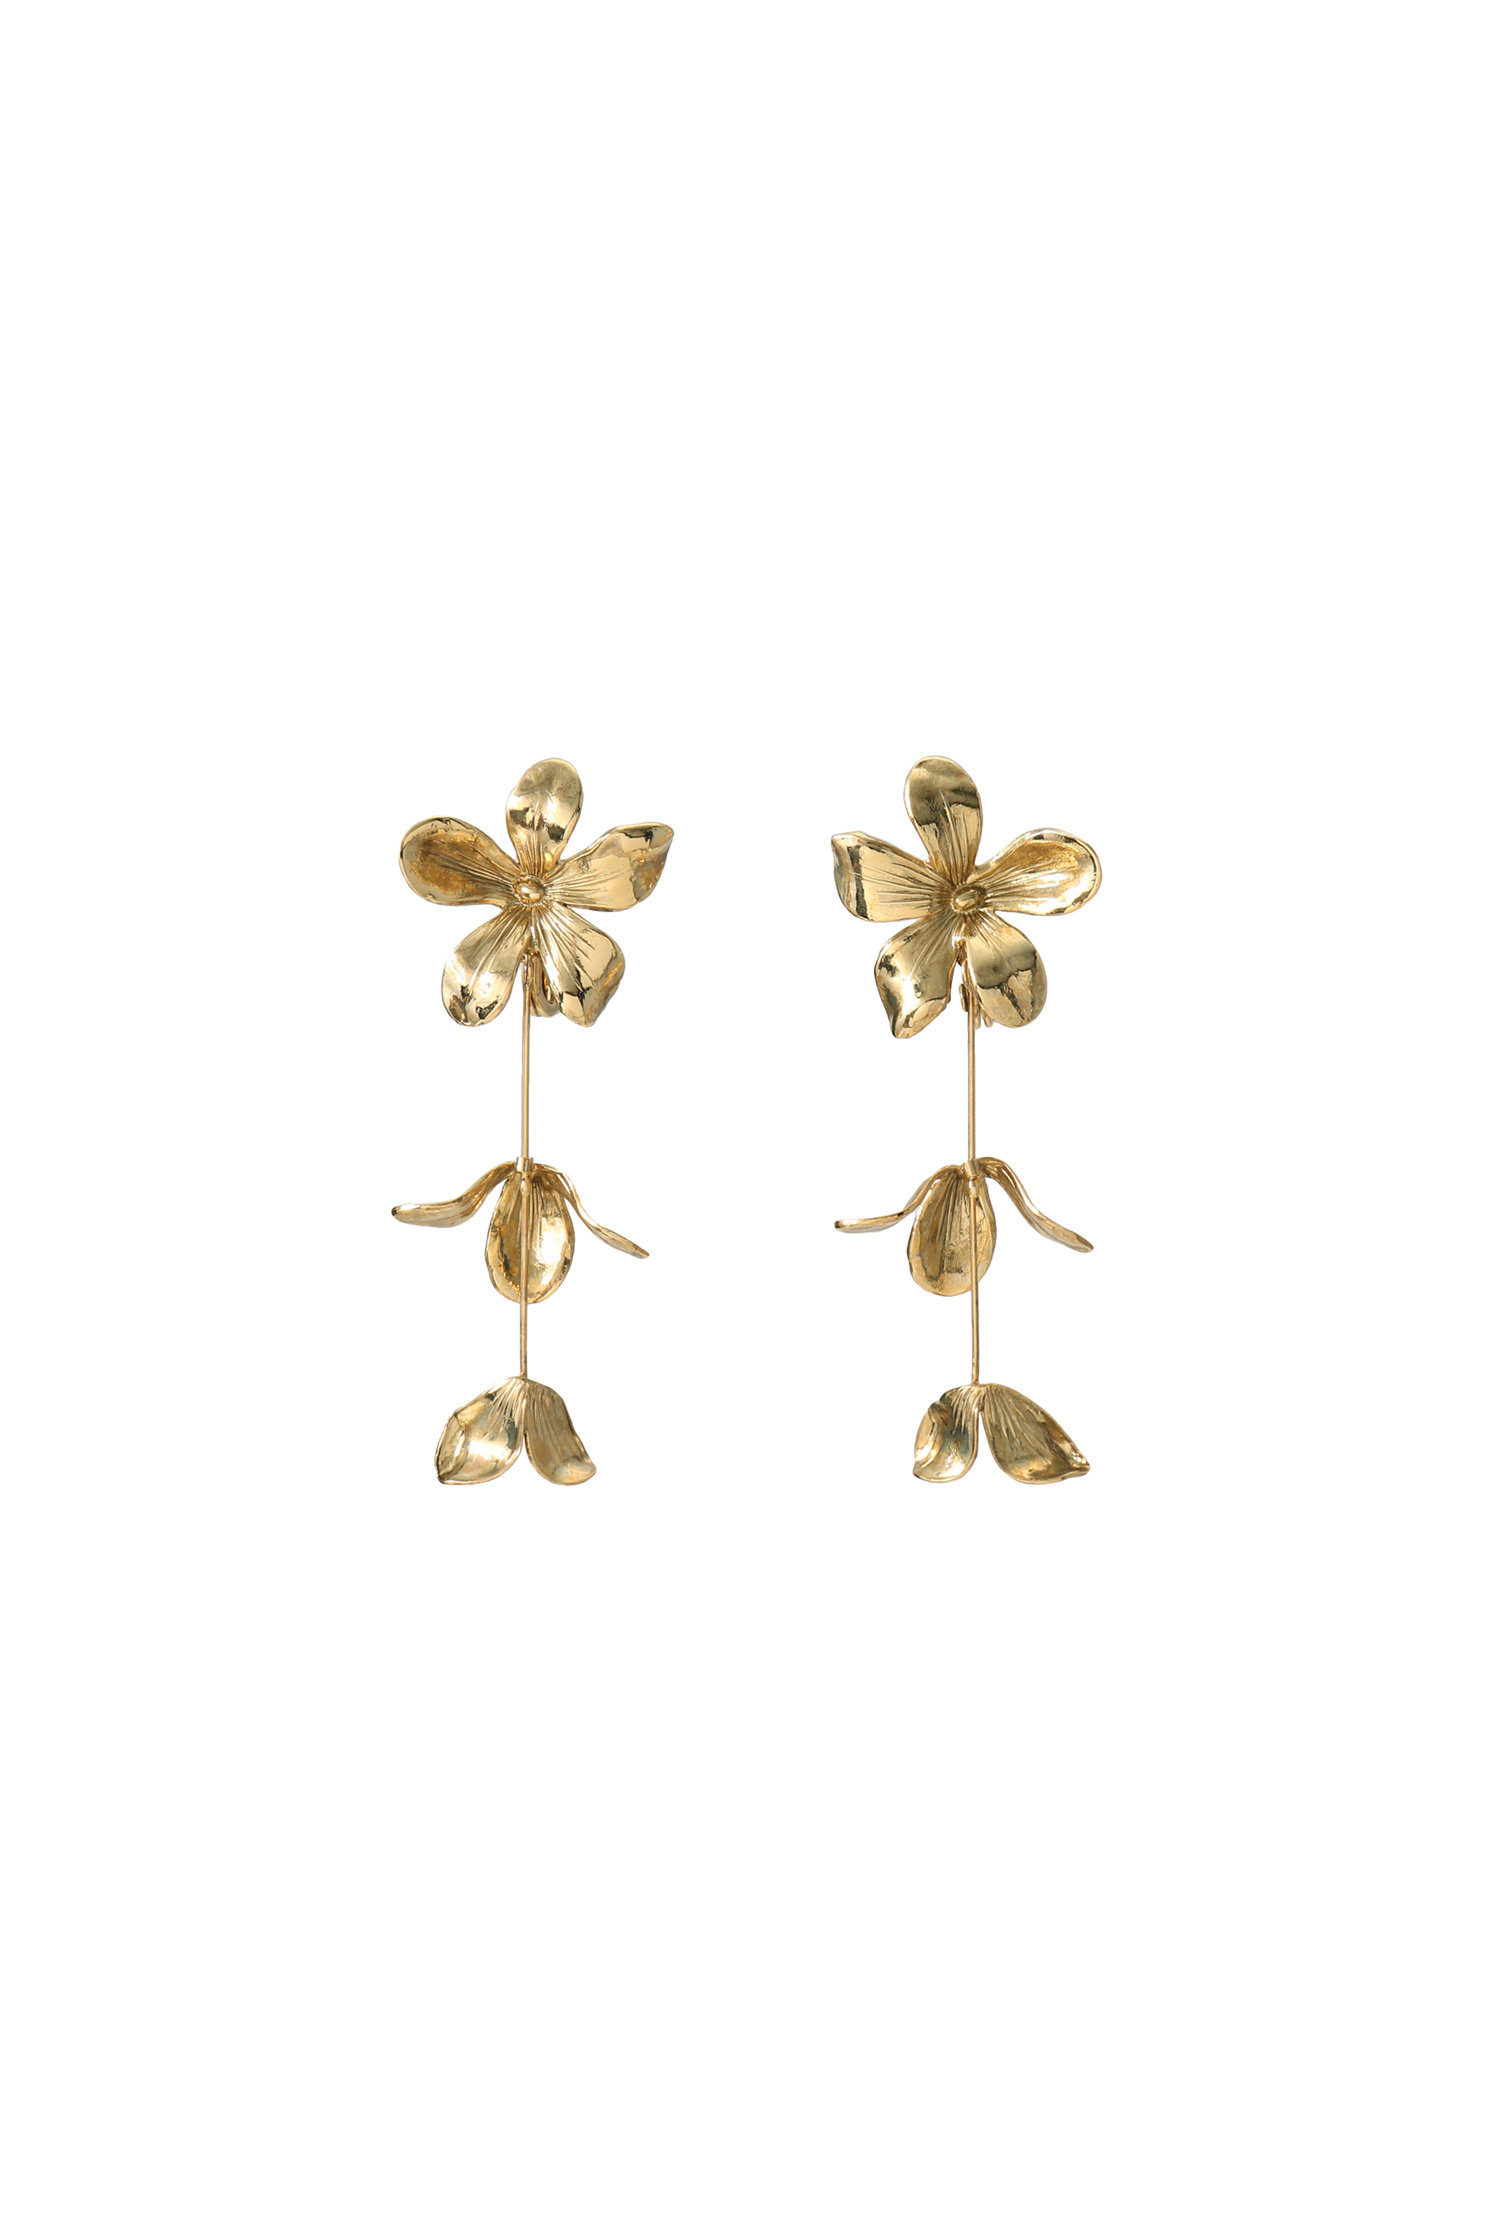 アデル ビジュー/ADER.bijouxのJOY triple petal スティックイヤリング(ゴールド/21295014)